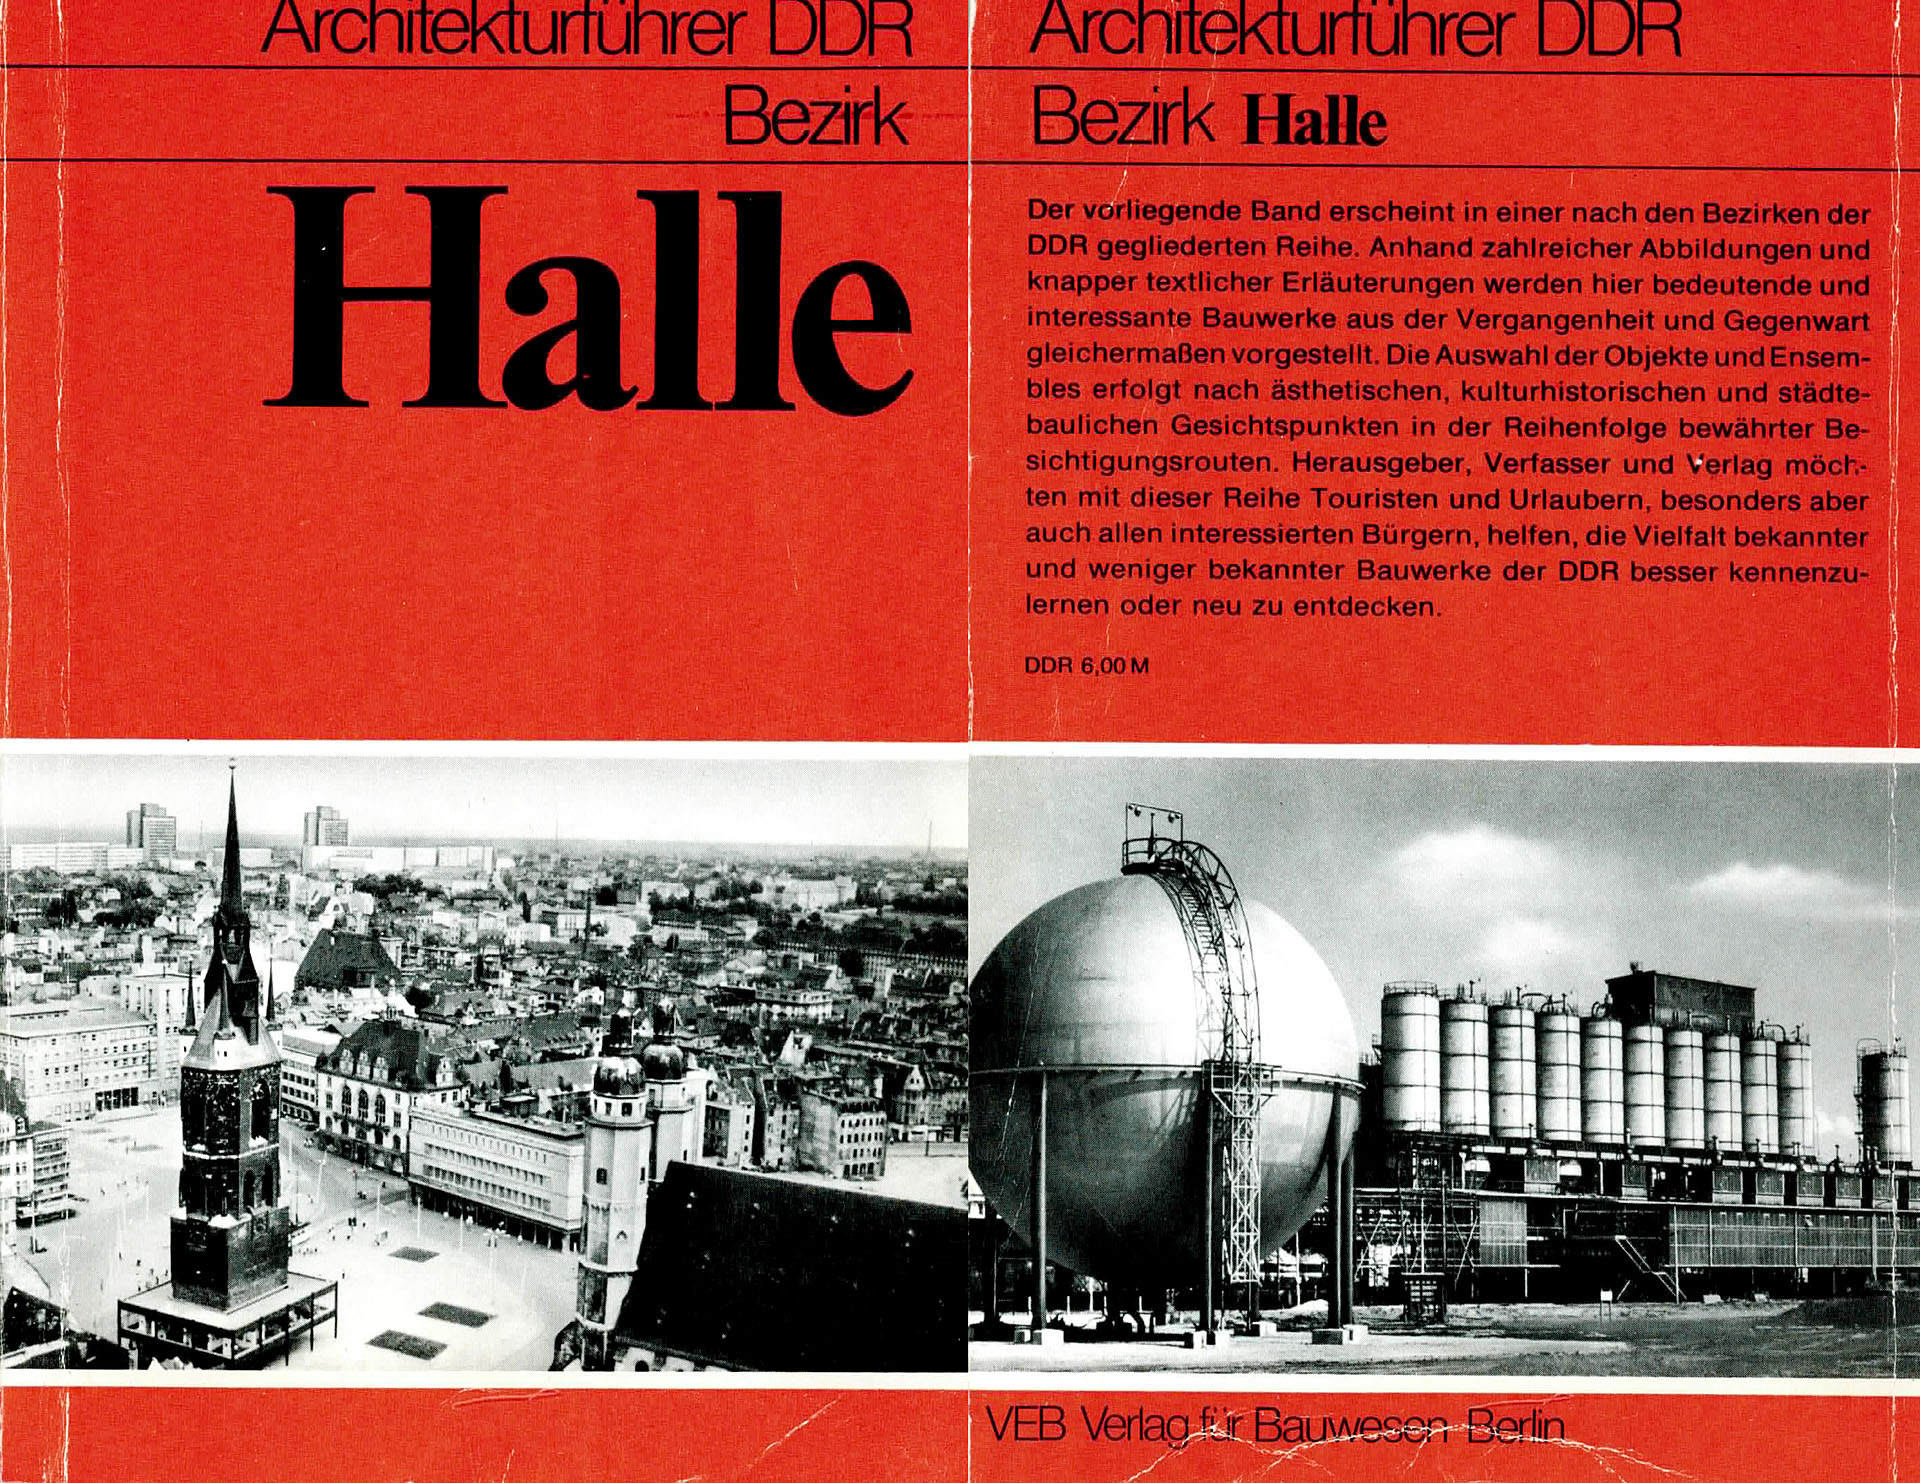 Architekturführer DDR Bezirk Halle - Münzberg, Josef / Richter, Gerhard / Findeisen, Peter